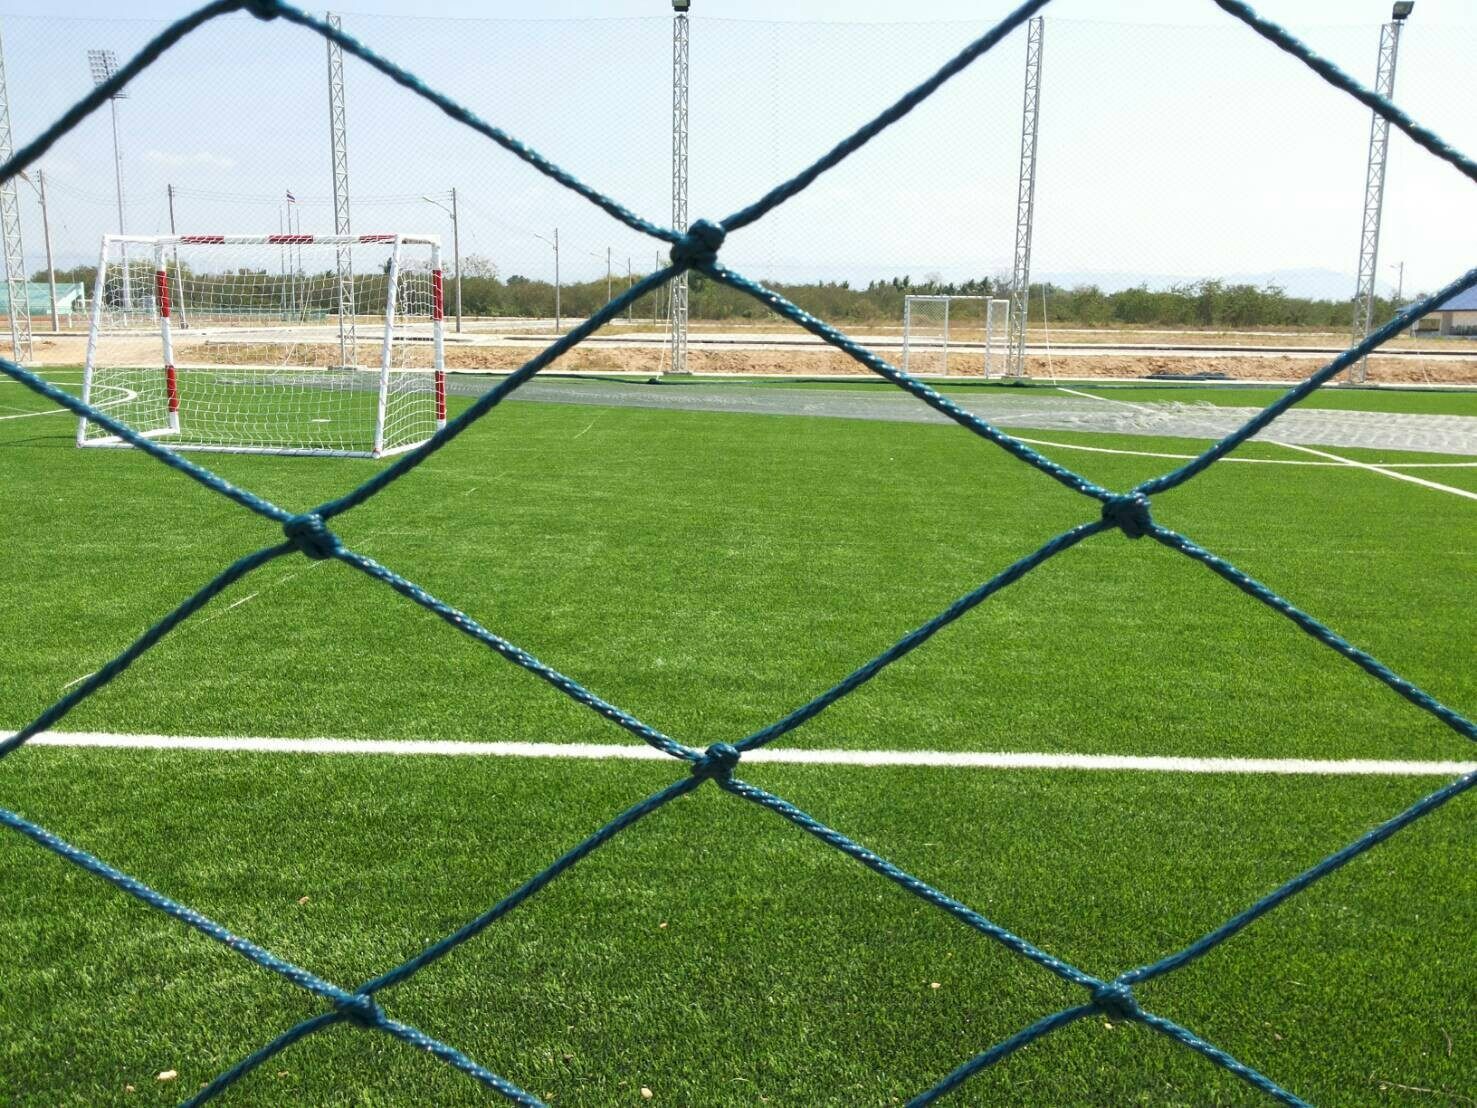 ตาข่ายสนามหญ้าเทียม/สนามฟุตบอล ตาข่ายกั้นลูกบอล ชนิดทนแรงดึงสูง + UV Protection (ขนาด 7x10 m.)⭐⭐3mm.ช่องตา12x12cm.⭐⭐